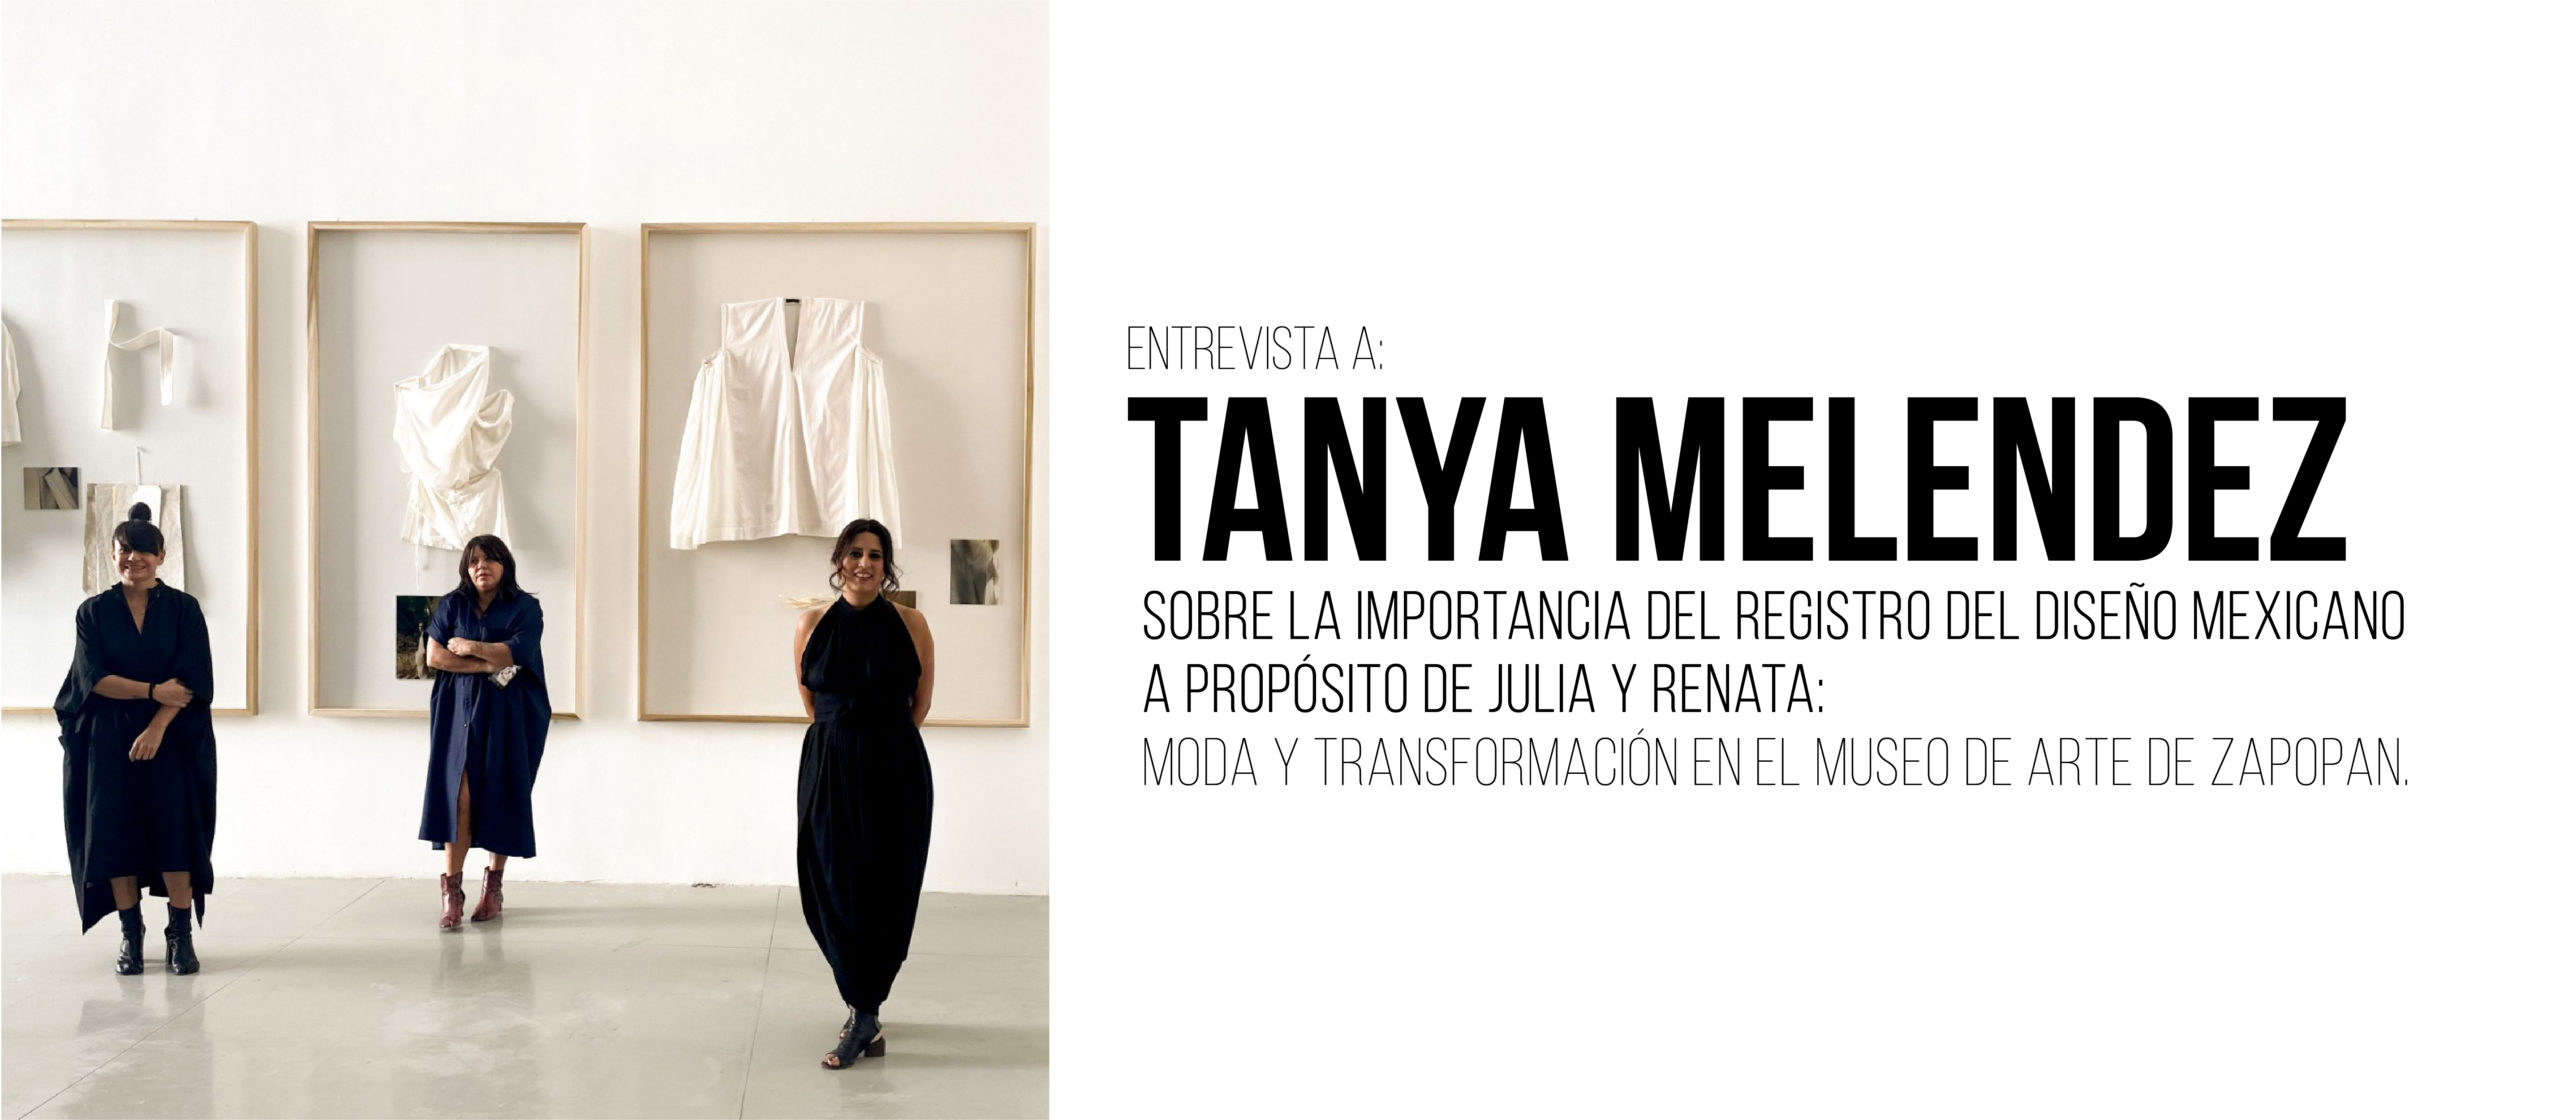 Entrevista a Tanya Melendez: Sobre la importancia del registro del diseño mexicano